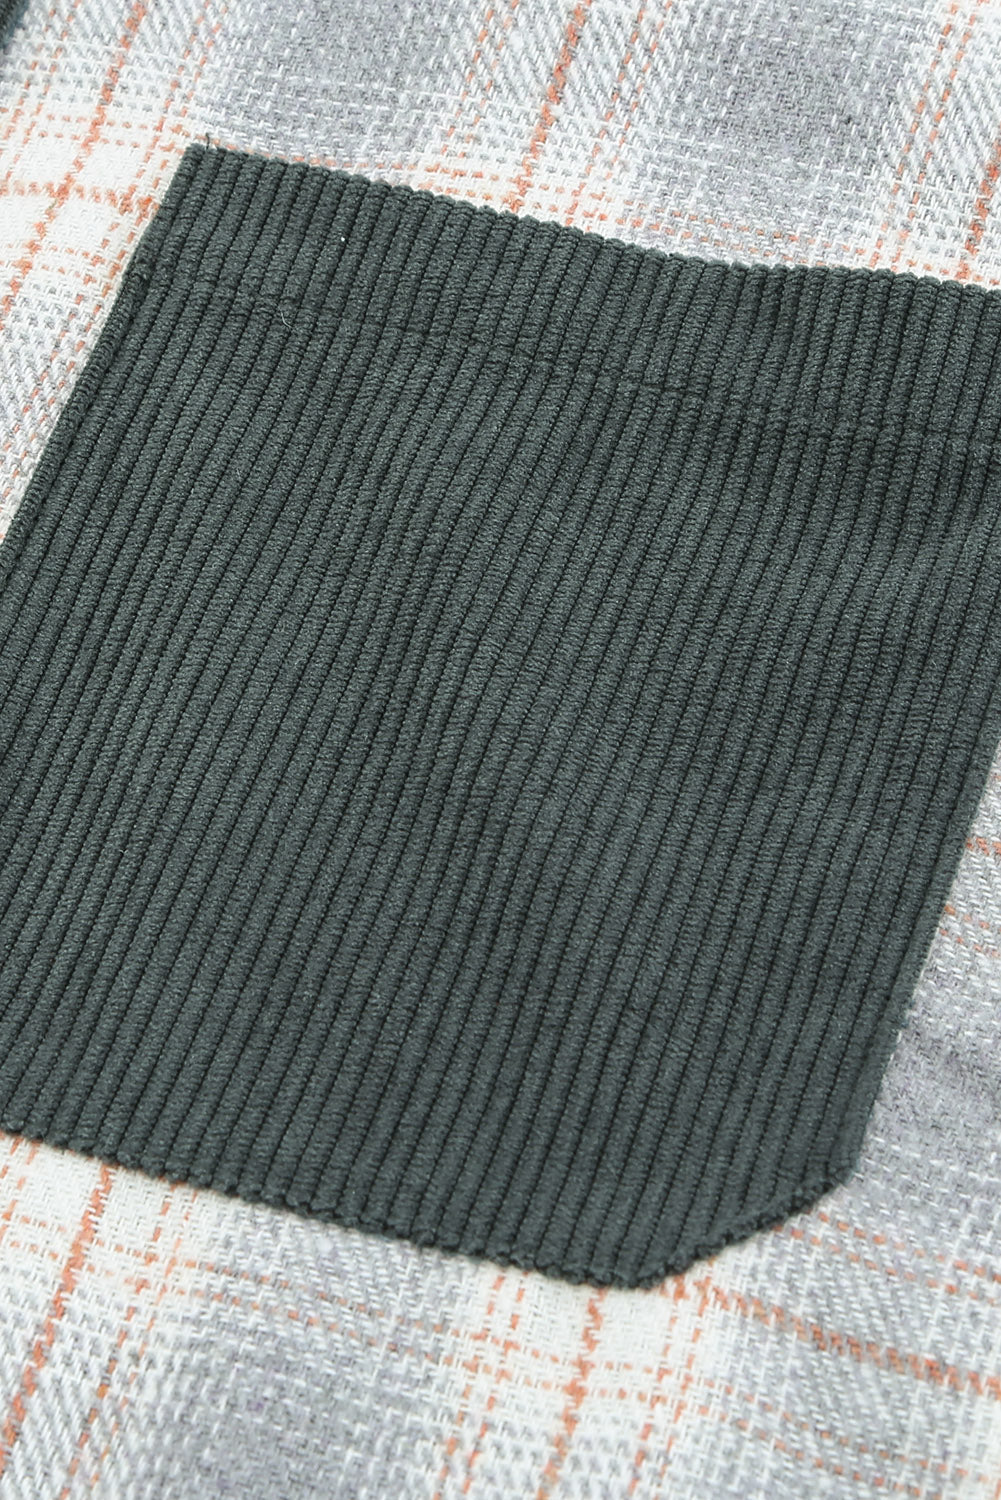 Gray Plaid Color Block Button-up Oversize Corduroy Shirt